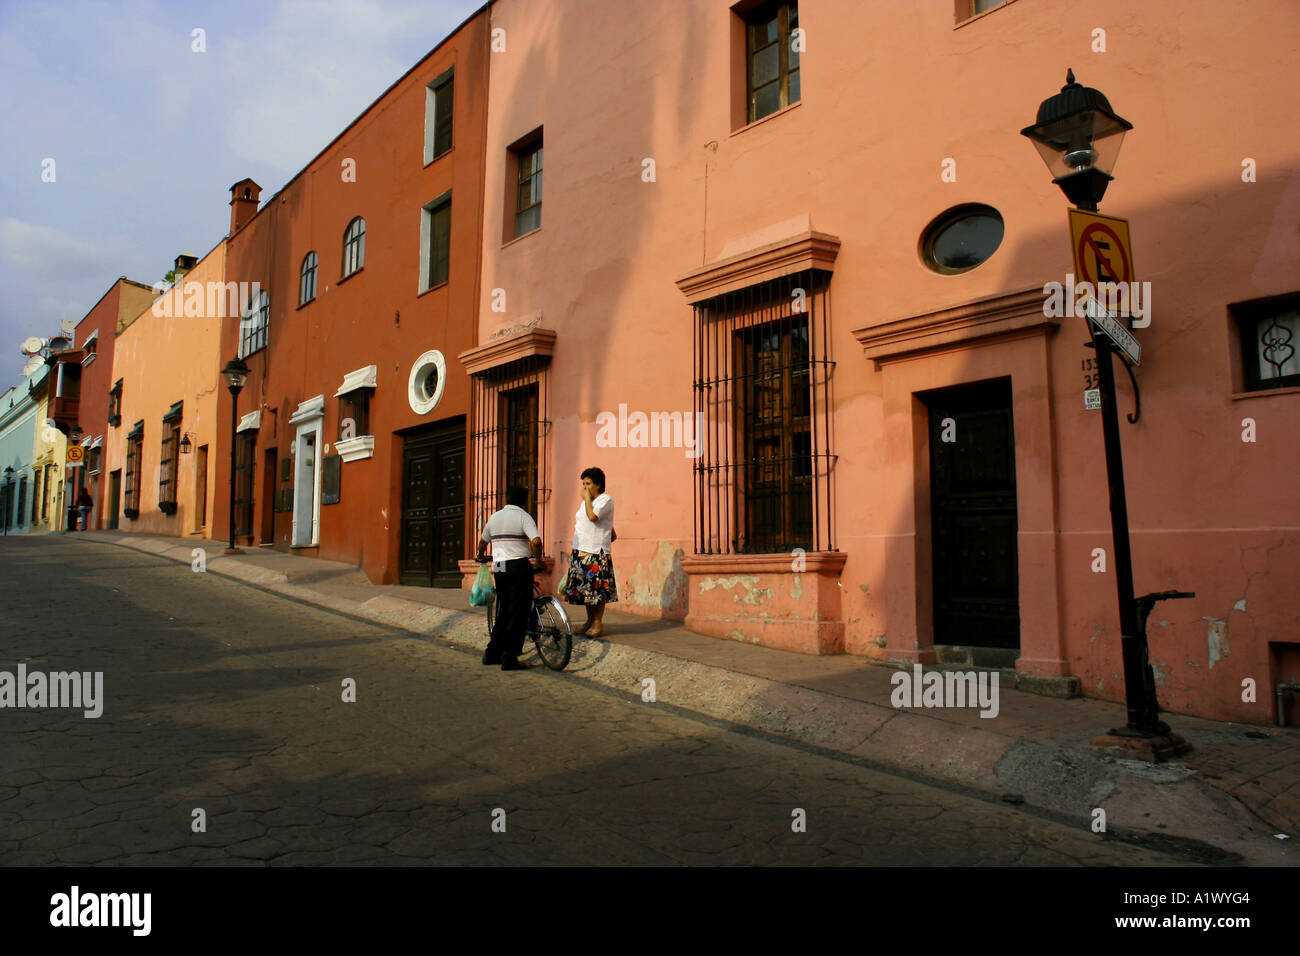 Colorful Street in Cuernavaca, Morelos, Mexico Stock Photo